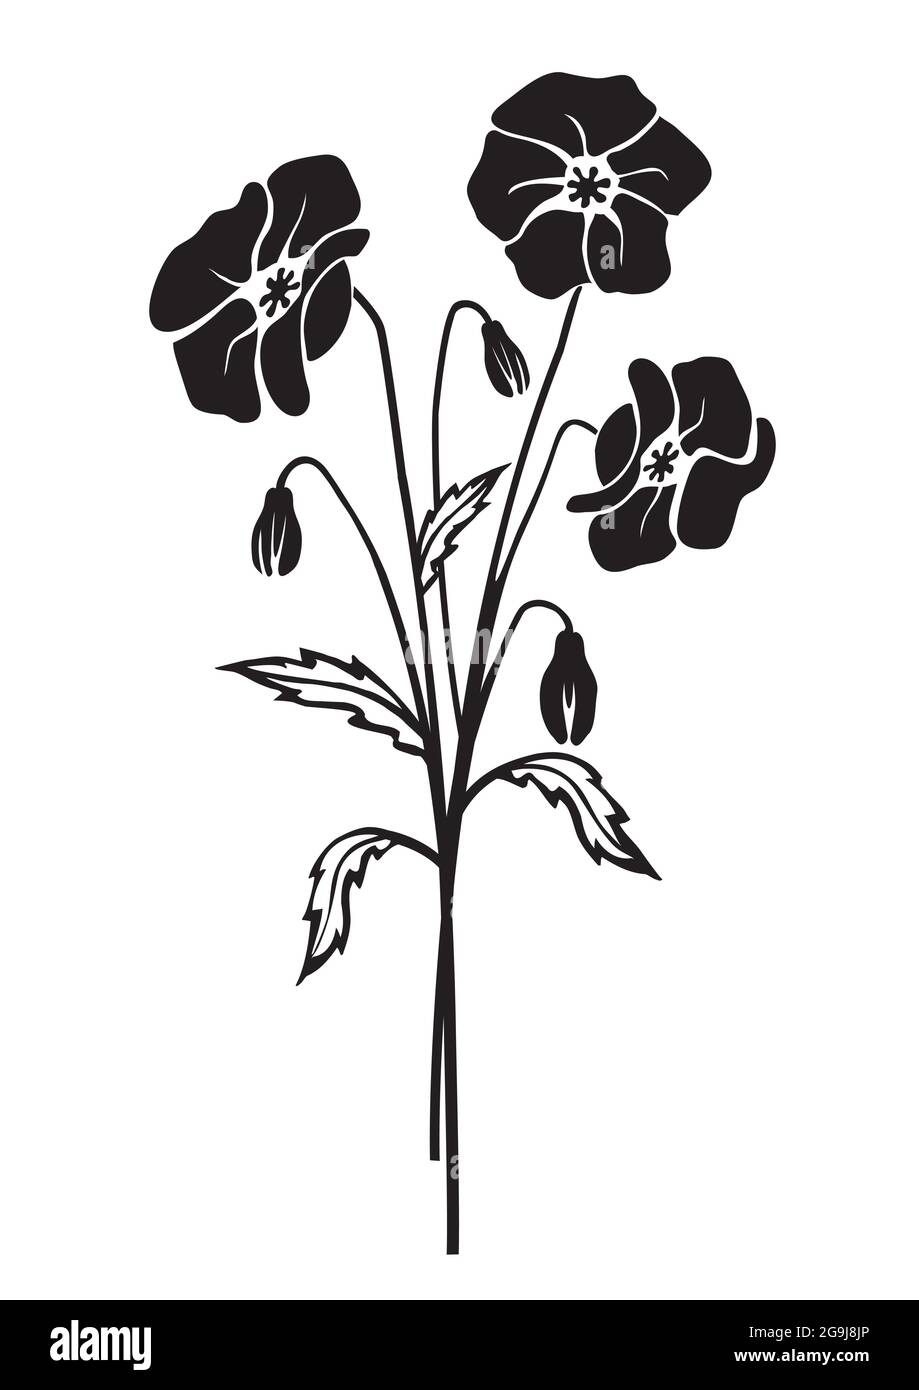 Silhouette noire de fleurs de pavot. Illustration stylisée du motif de fleur mélancolique. Isolé sur fond blanc. Vecteur disponible. Illustration de Vecteur